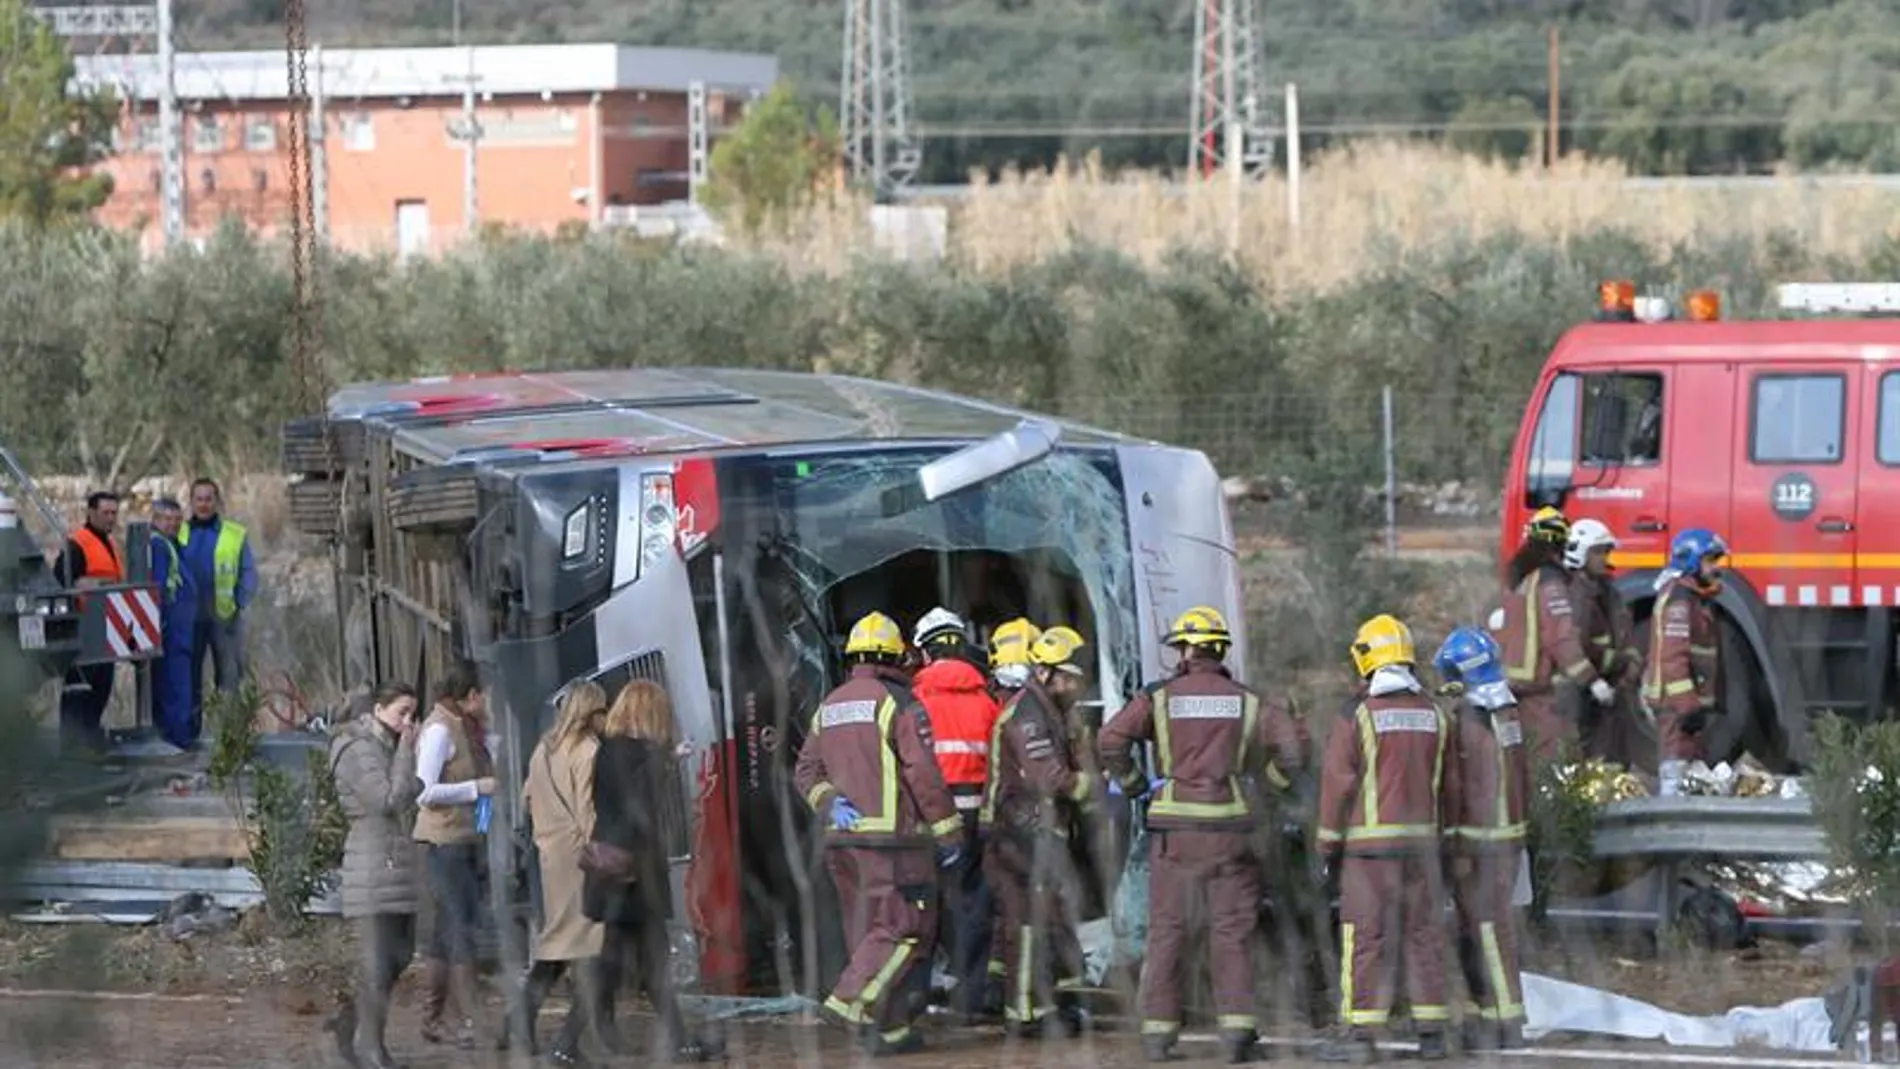 El autocar siniestrado transportaba estudiantes de Erasmus de diversas nacionalidades